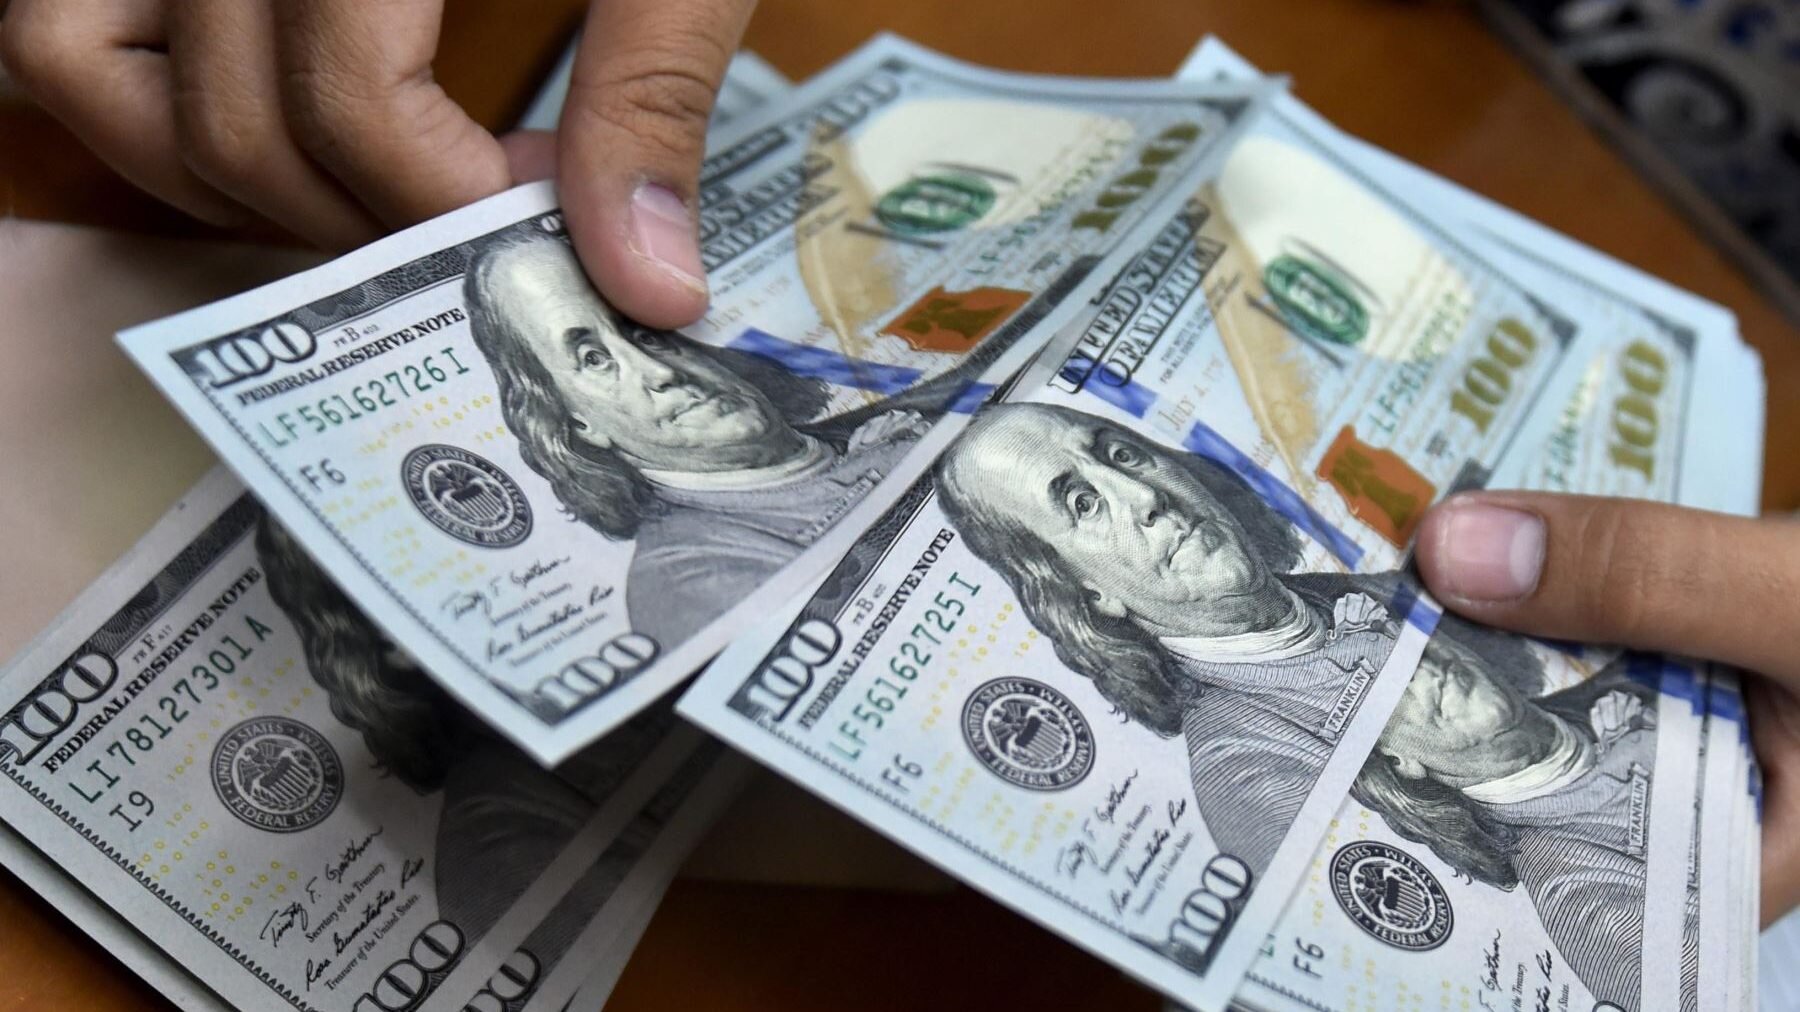 El promedio del dólar en el país llanero fue establecido en Bs. 37,64 por cada dólar, de acuerdo a la última actualización de Monitor Dólar.